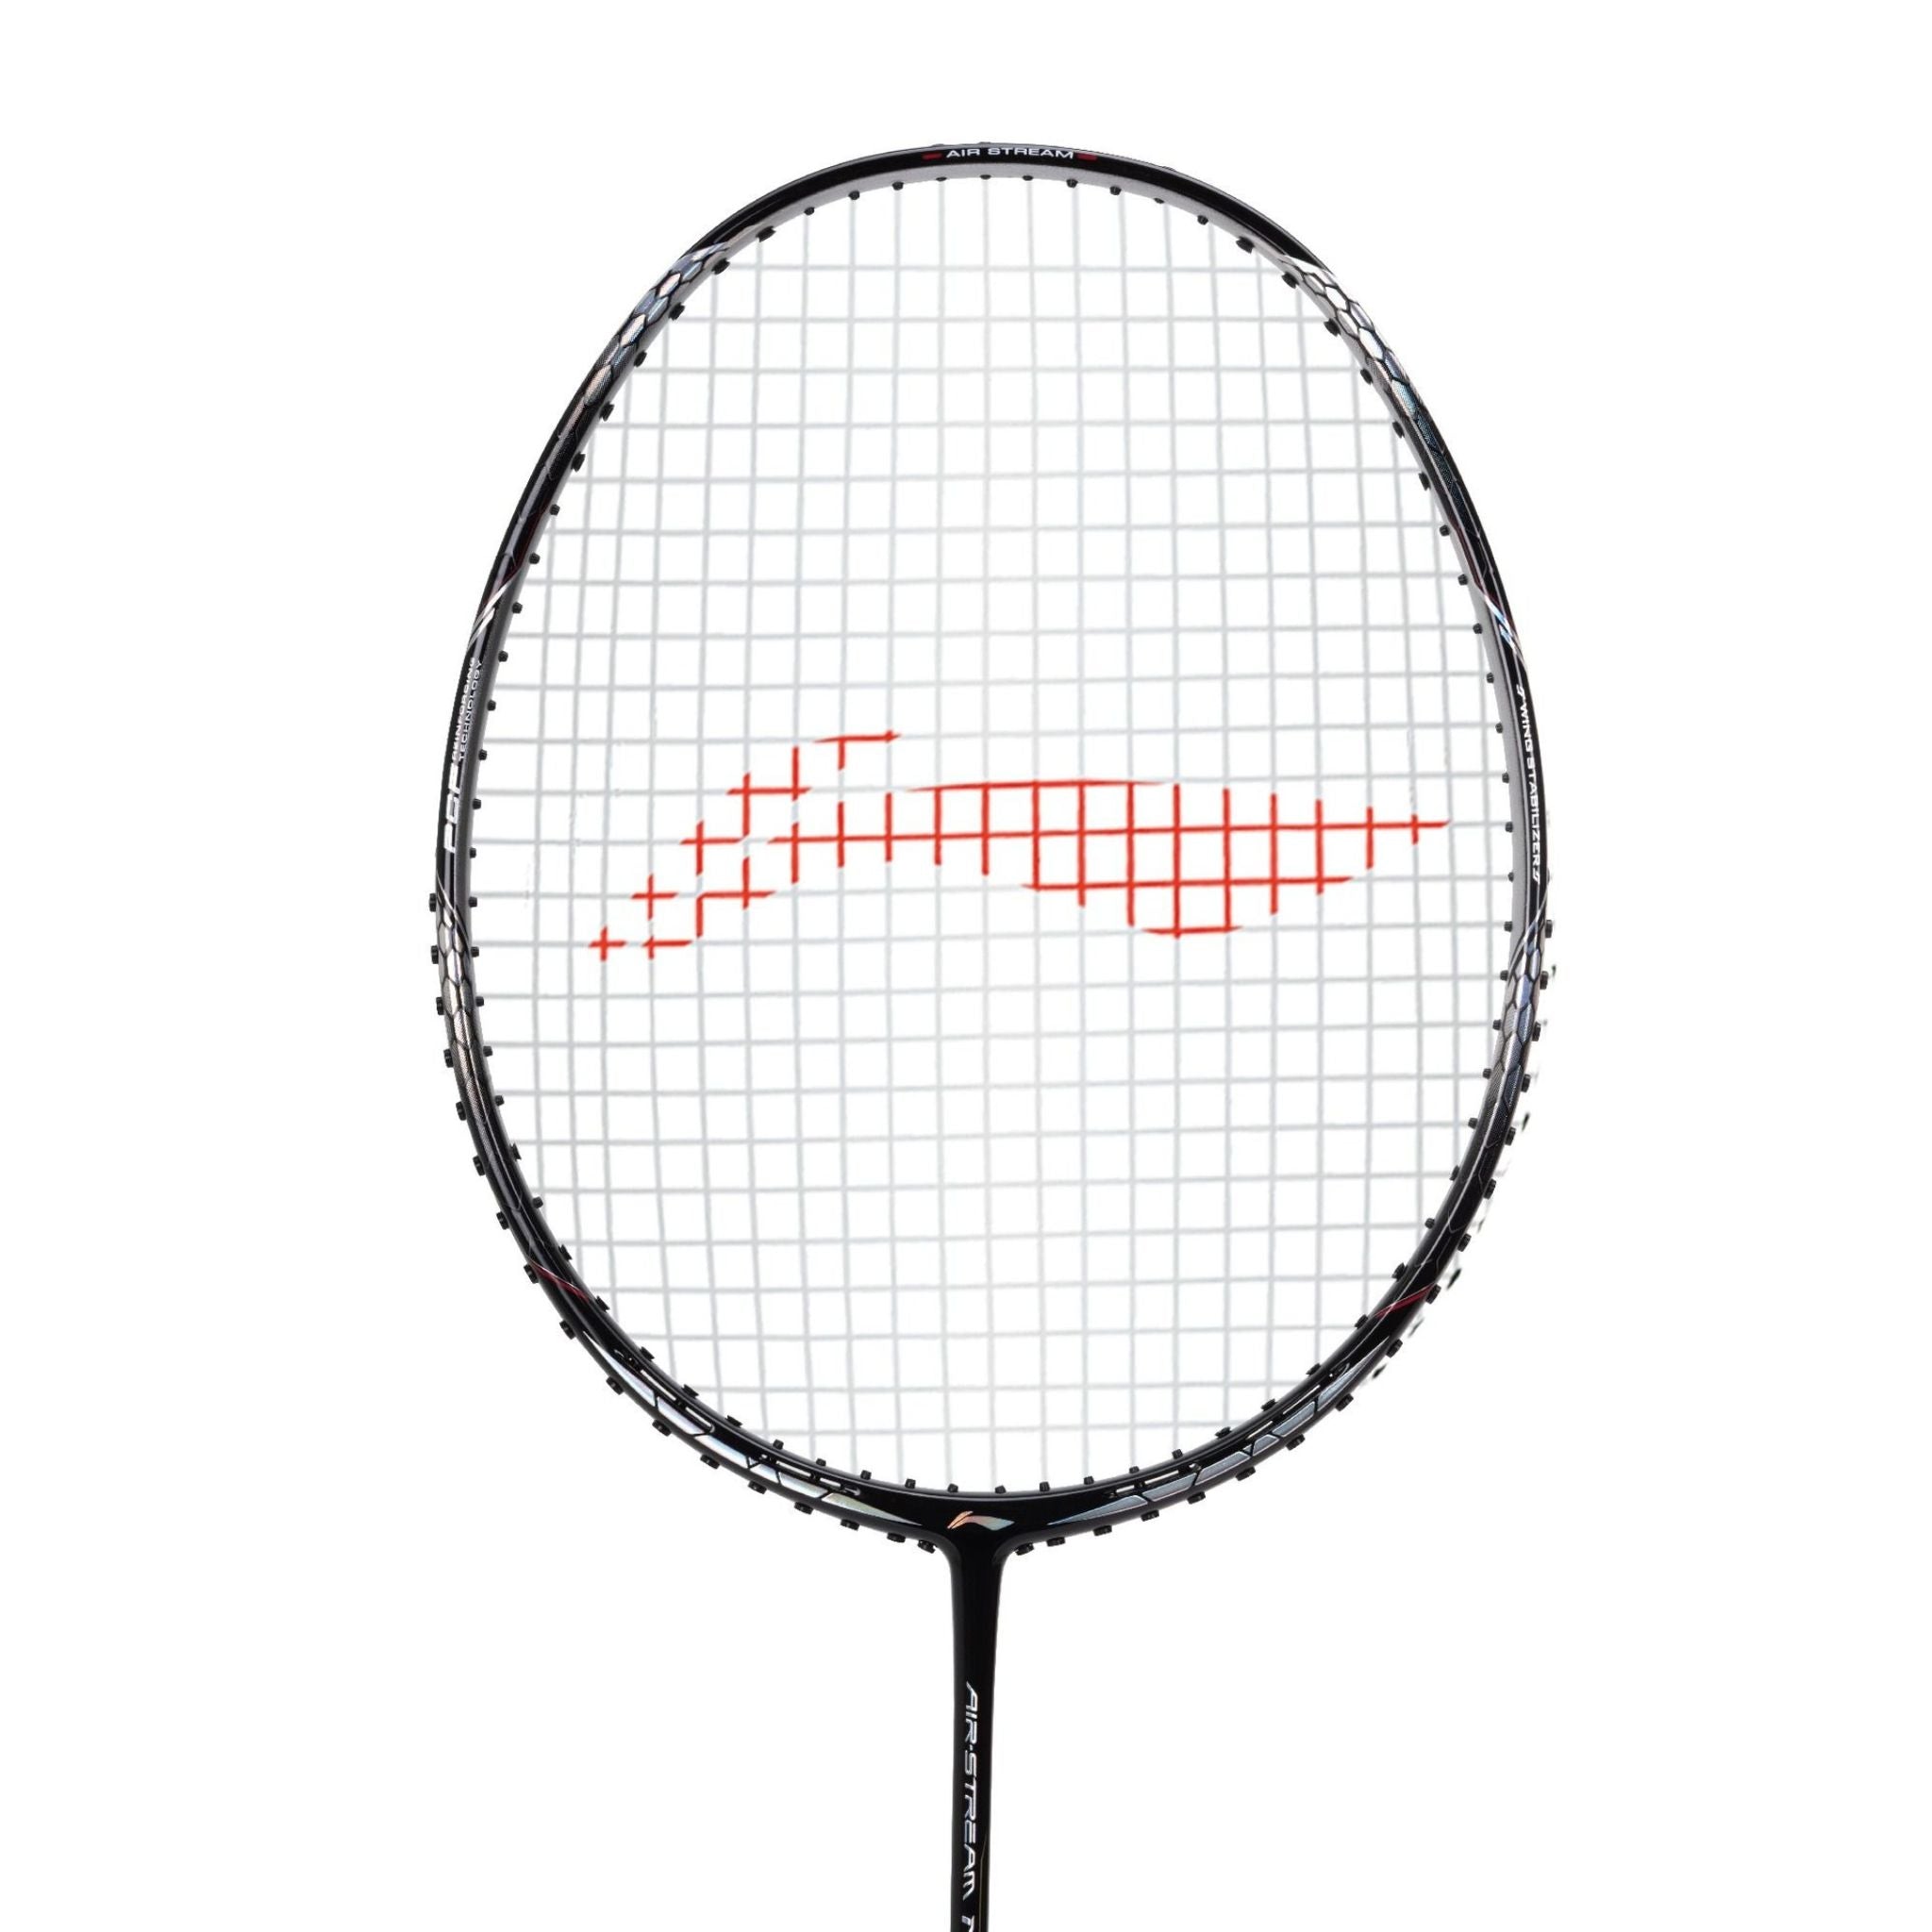 LI-NING Air-Stream N 99 Badminton Racket